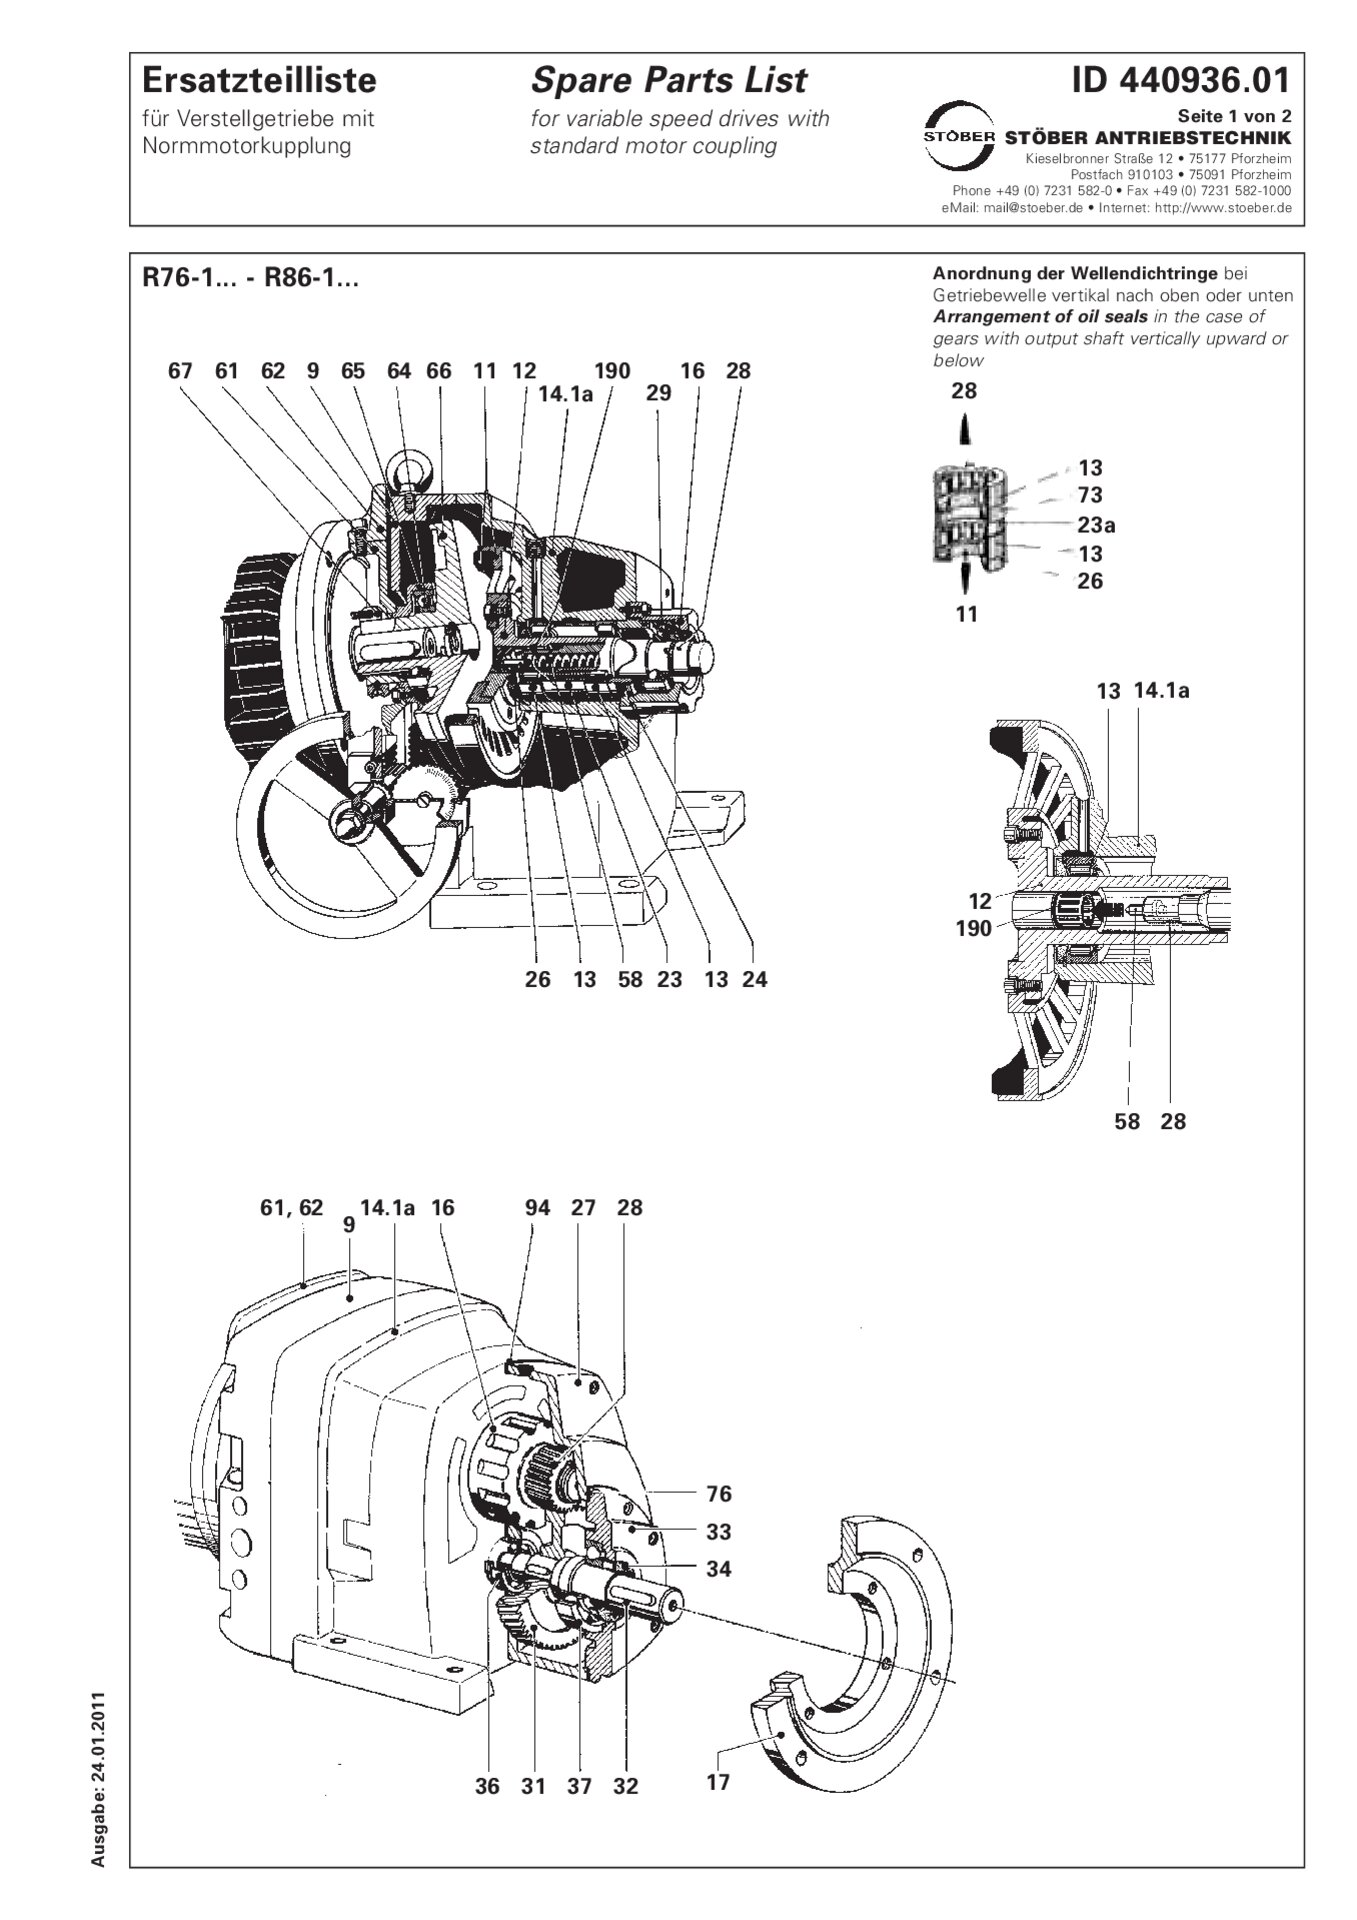 Ersatzteilliste R76-1/R86-1 mit NormmotorkupplungSpare parts list R76-1/R86-1 with standard motor coupling